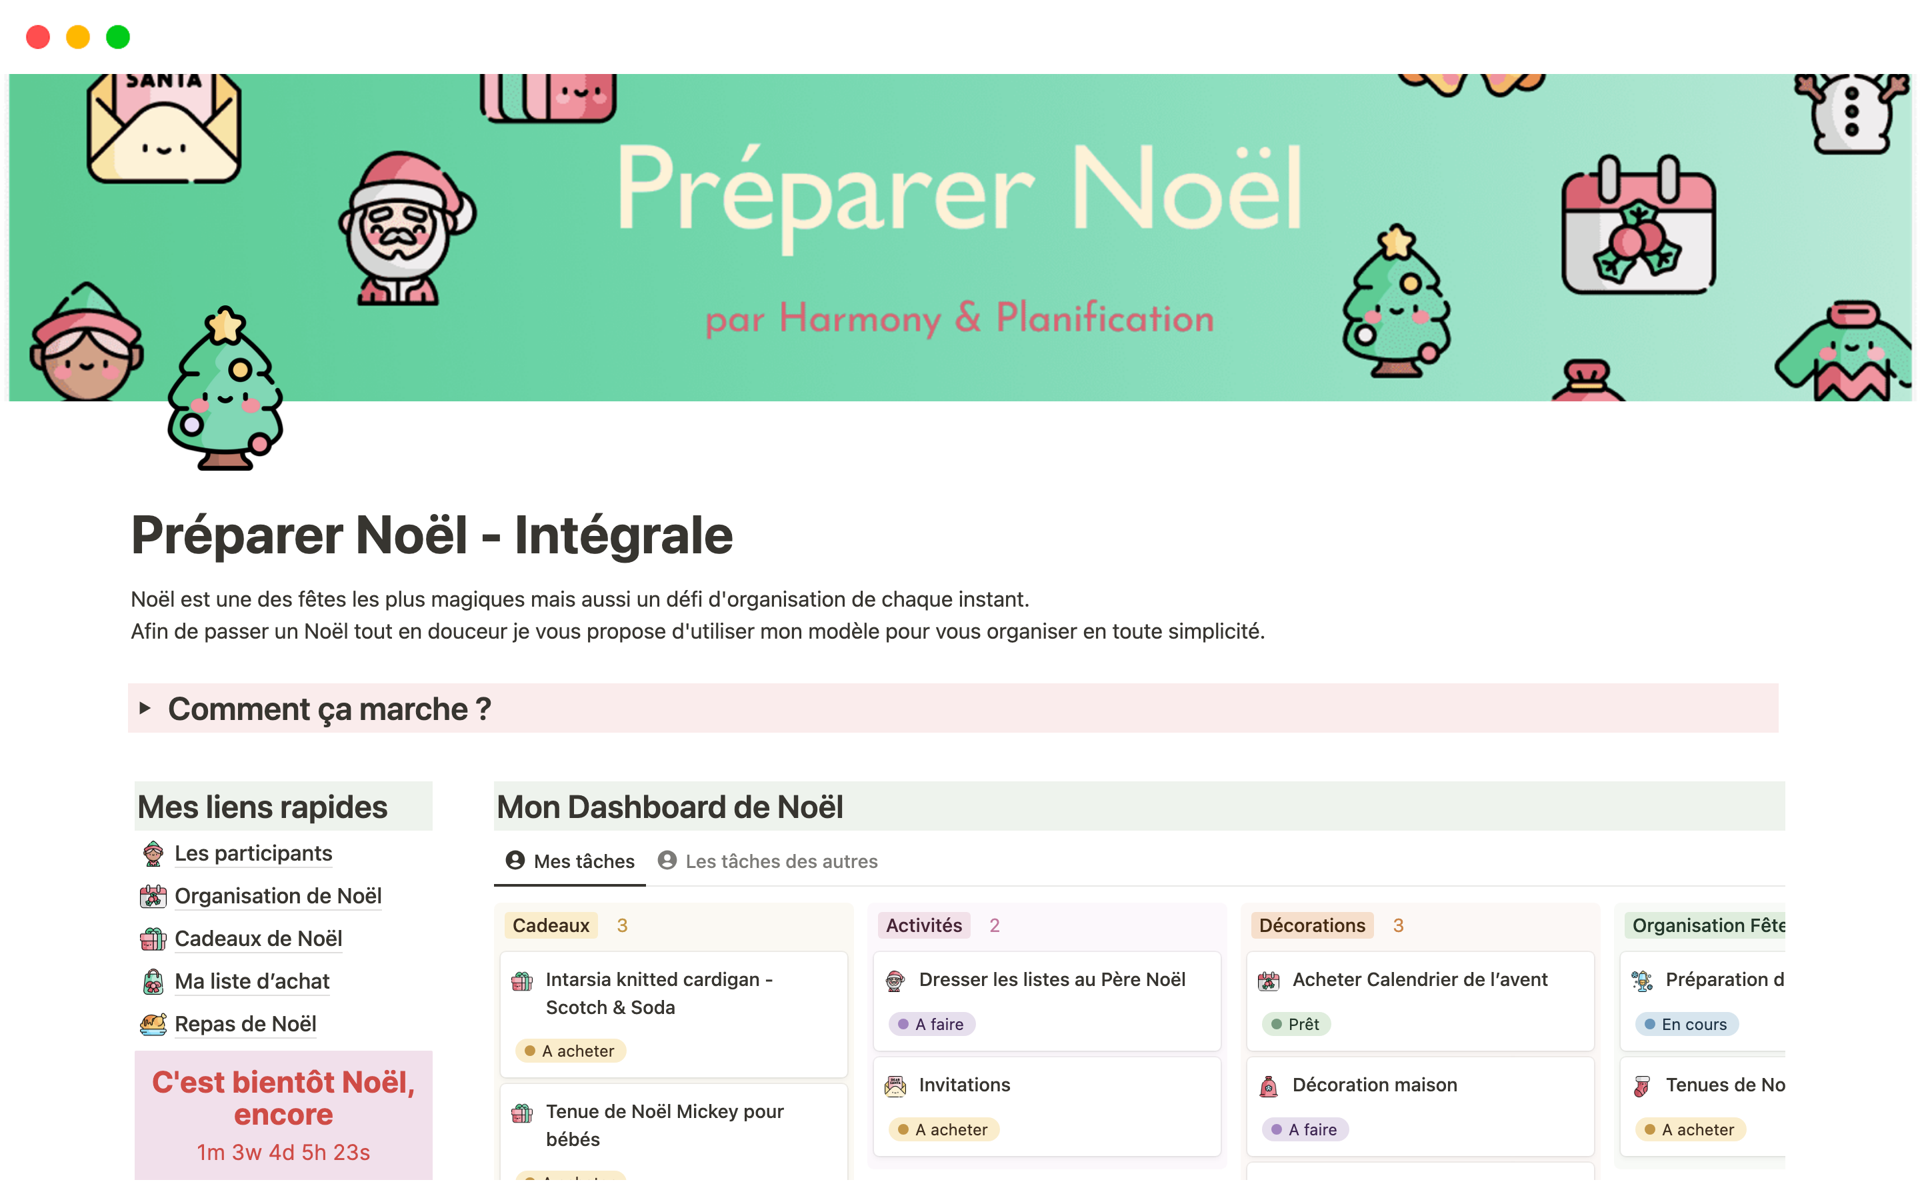 A template preview for Préparer Noël - Intégrale